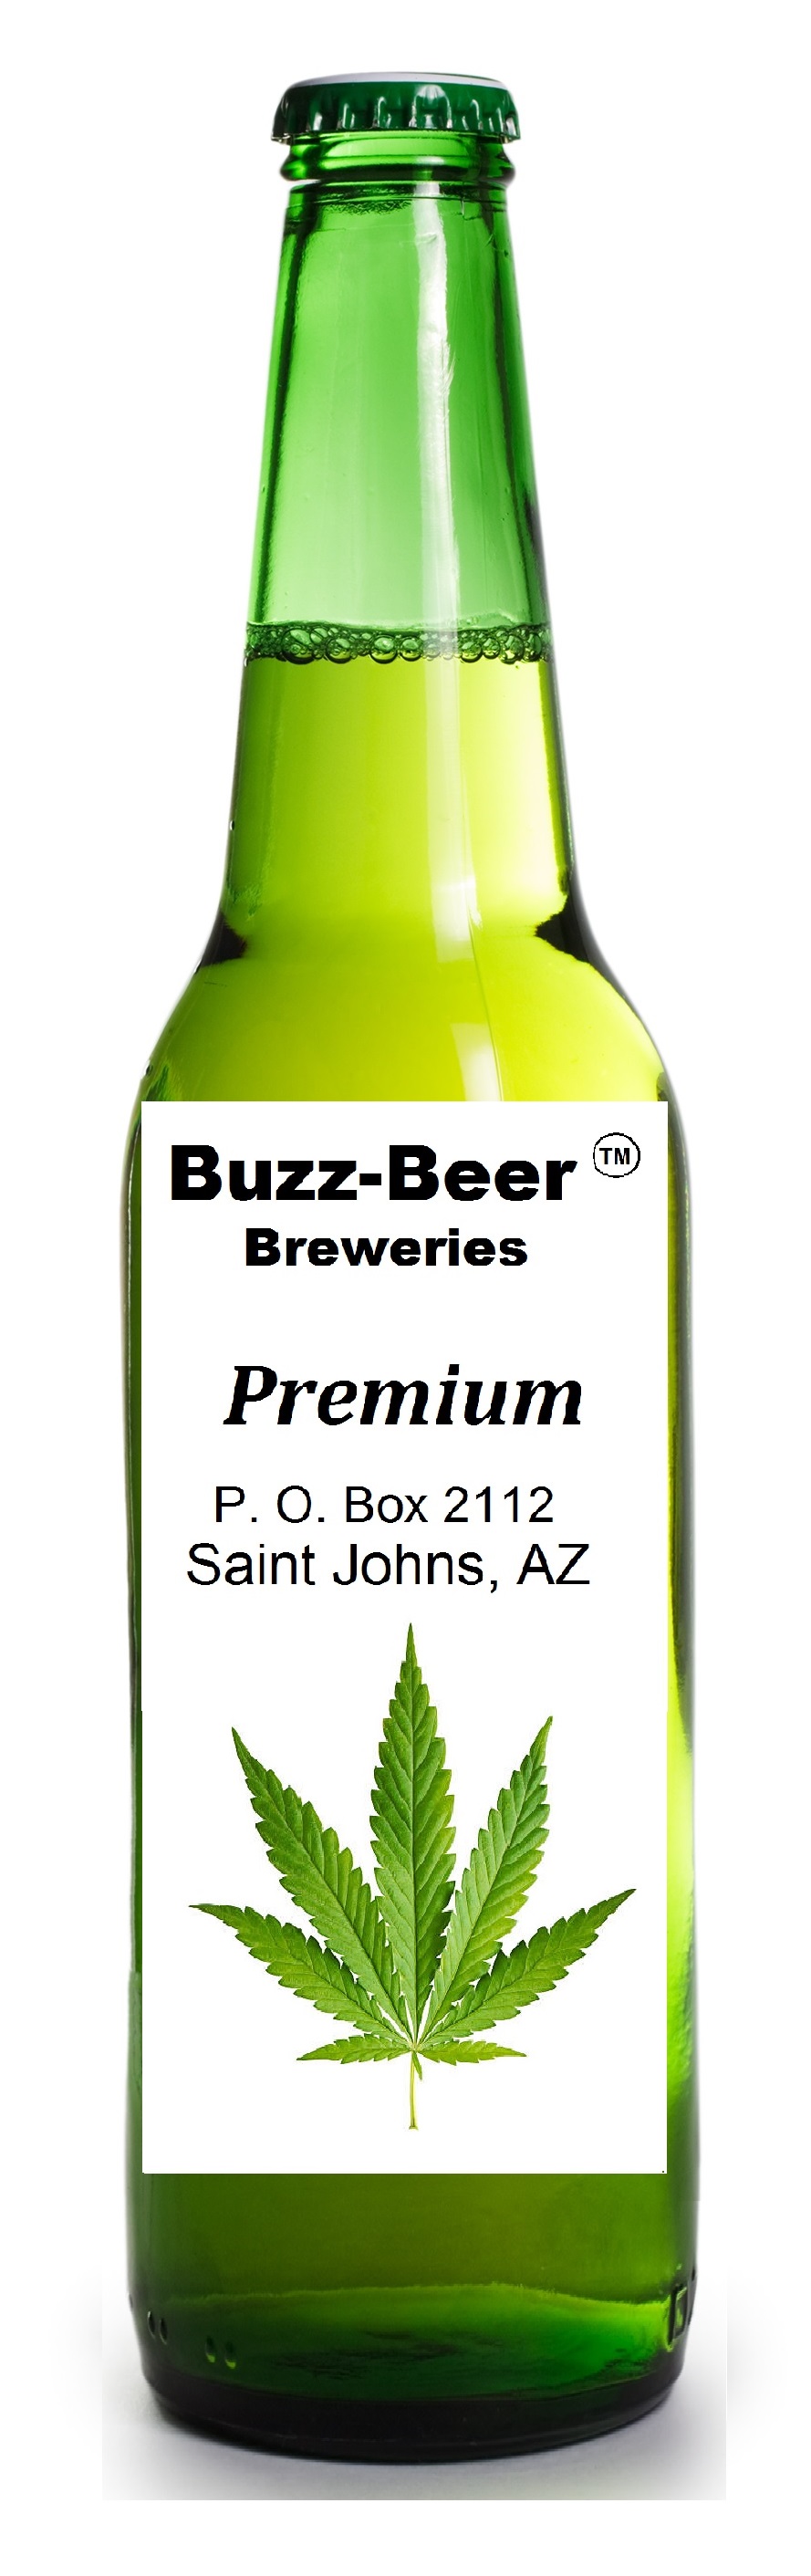 Buzz-Beer